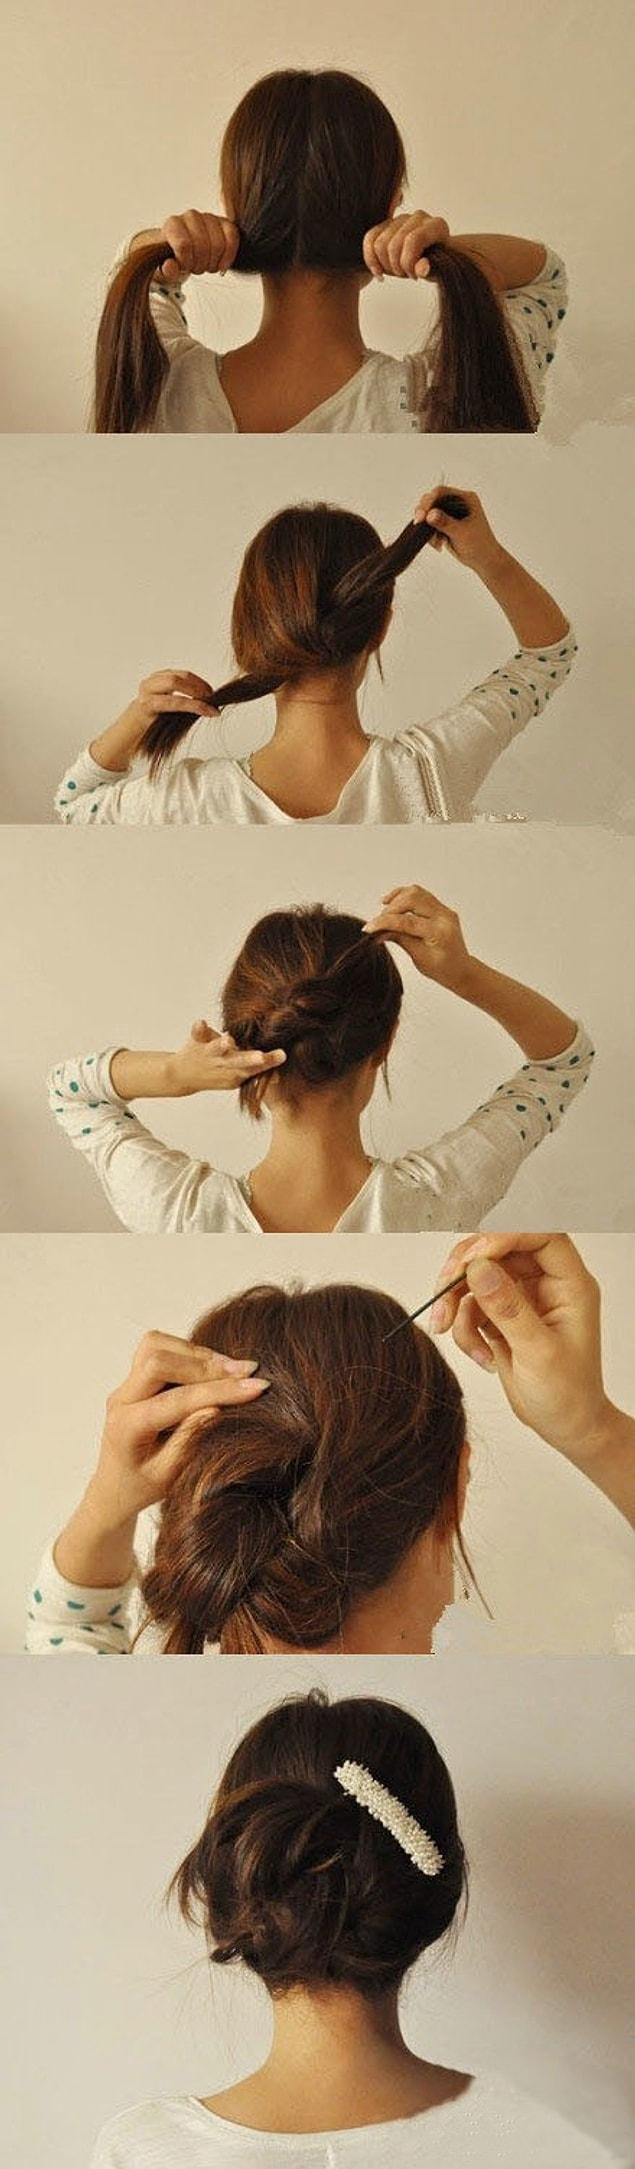 1. Saçınızı ortadan ikiye ayırın, daha sonra düğüm atarmış gibi iki yandan burun uçlarını ters istikametten saçınızın içine saklayın ve tel toka yardımı ile tutturun.